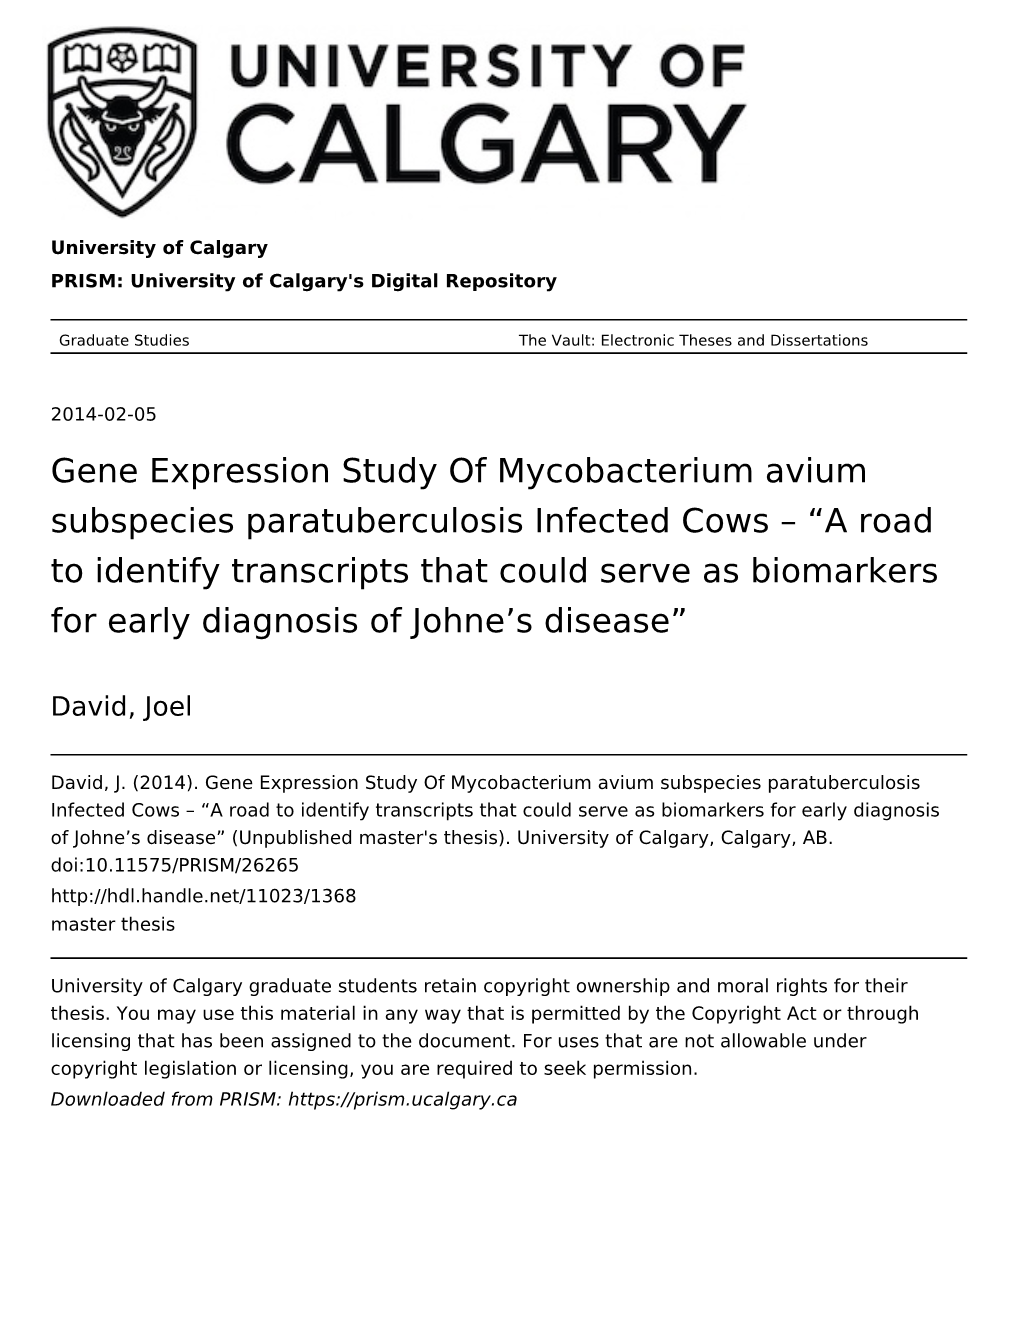 Gene Expression Study of Mycobacterium Avium Subspecies